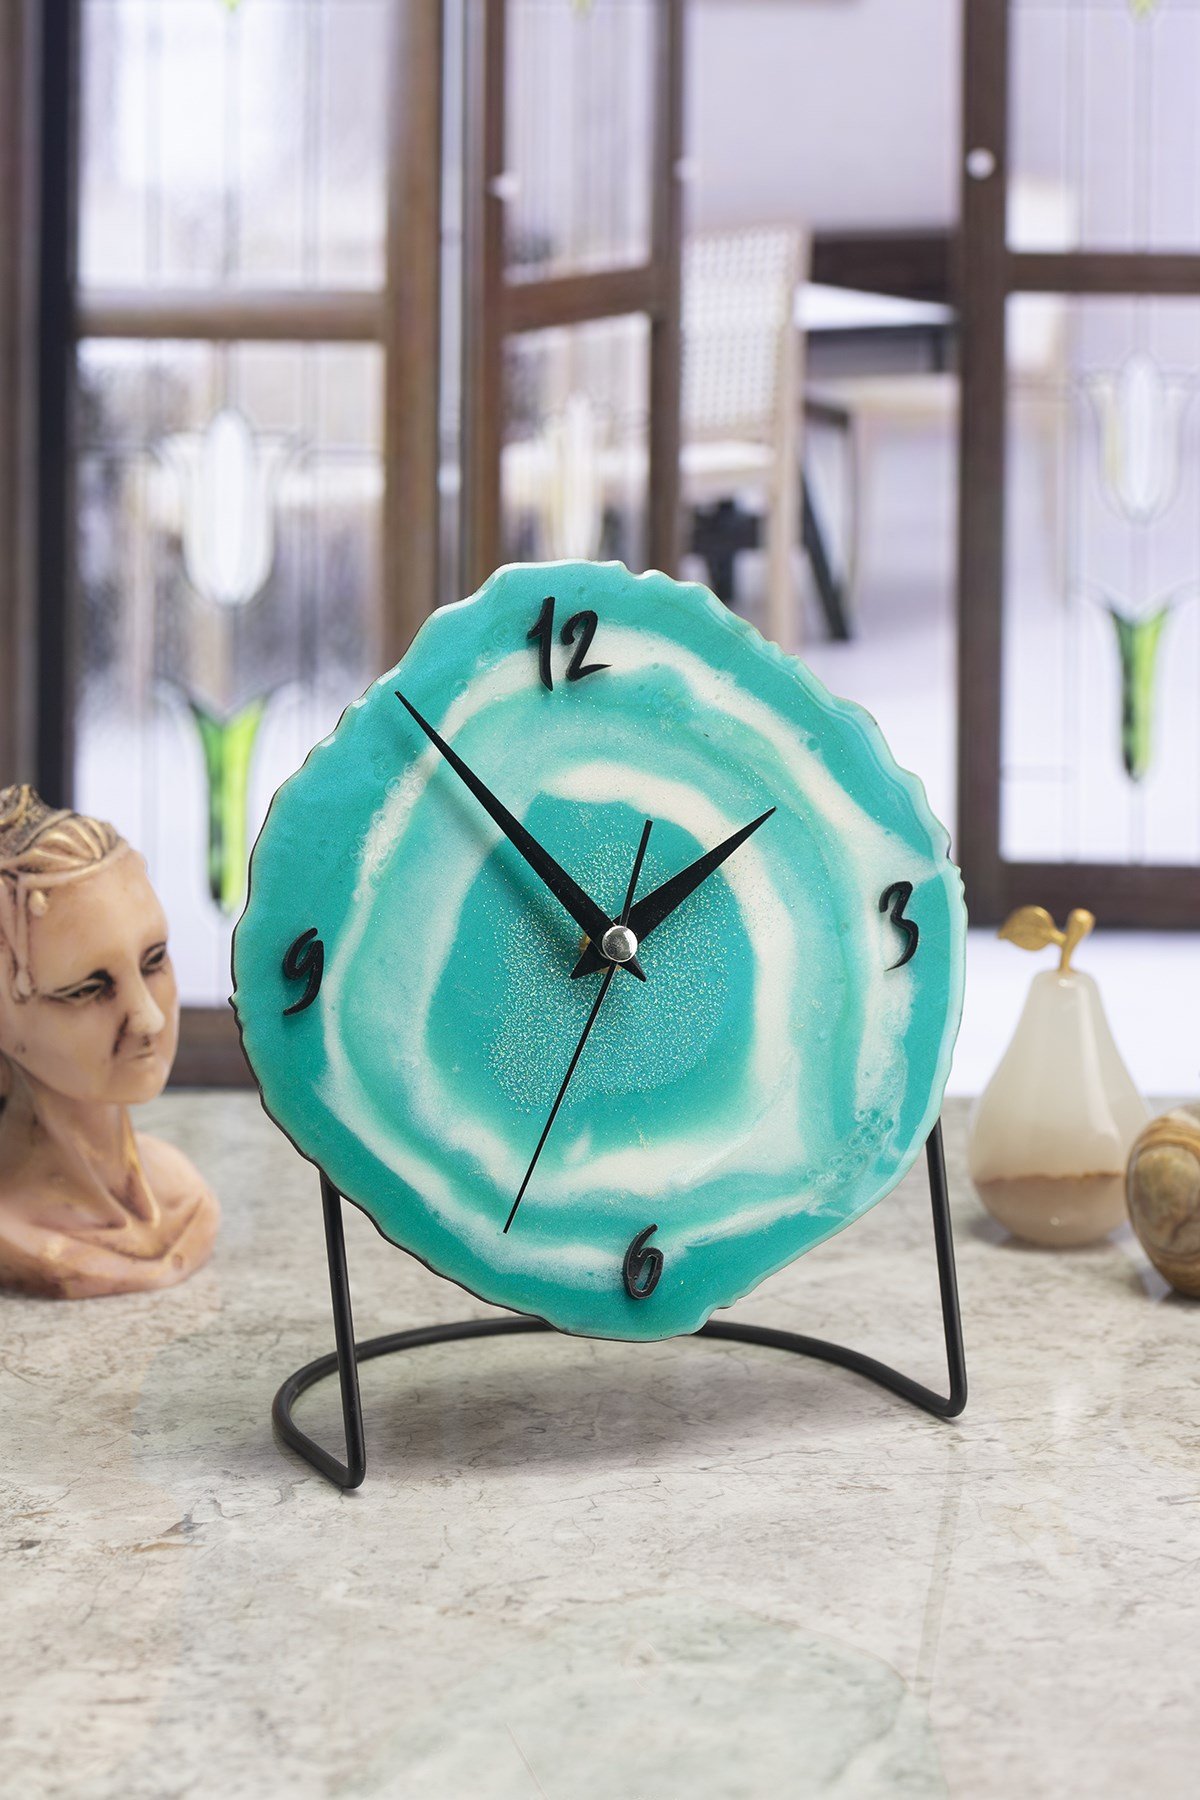 Epoksi Masa Saatleri Fiyatları ve Daha Birçok Dekoratif Ürün | MuyikaDesign